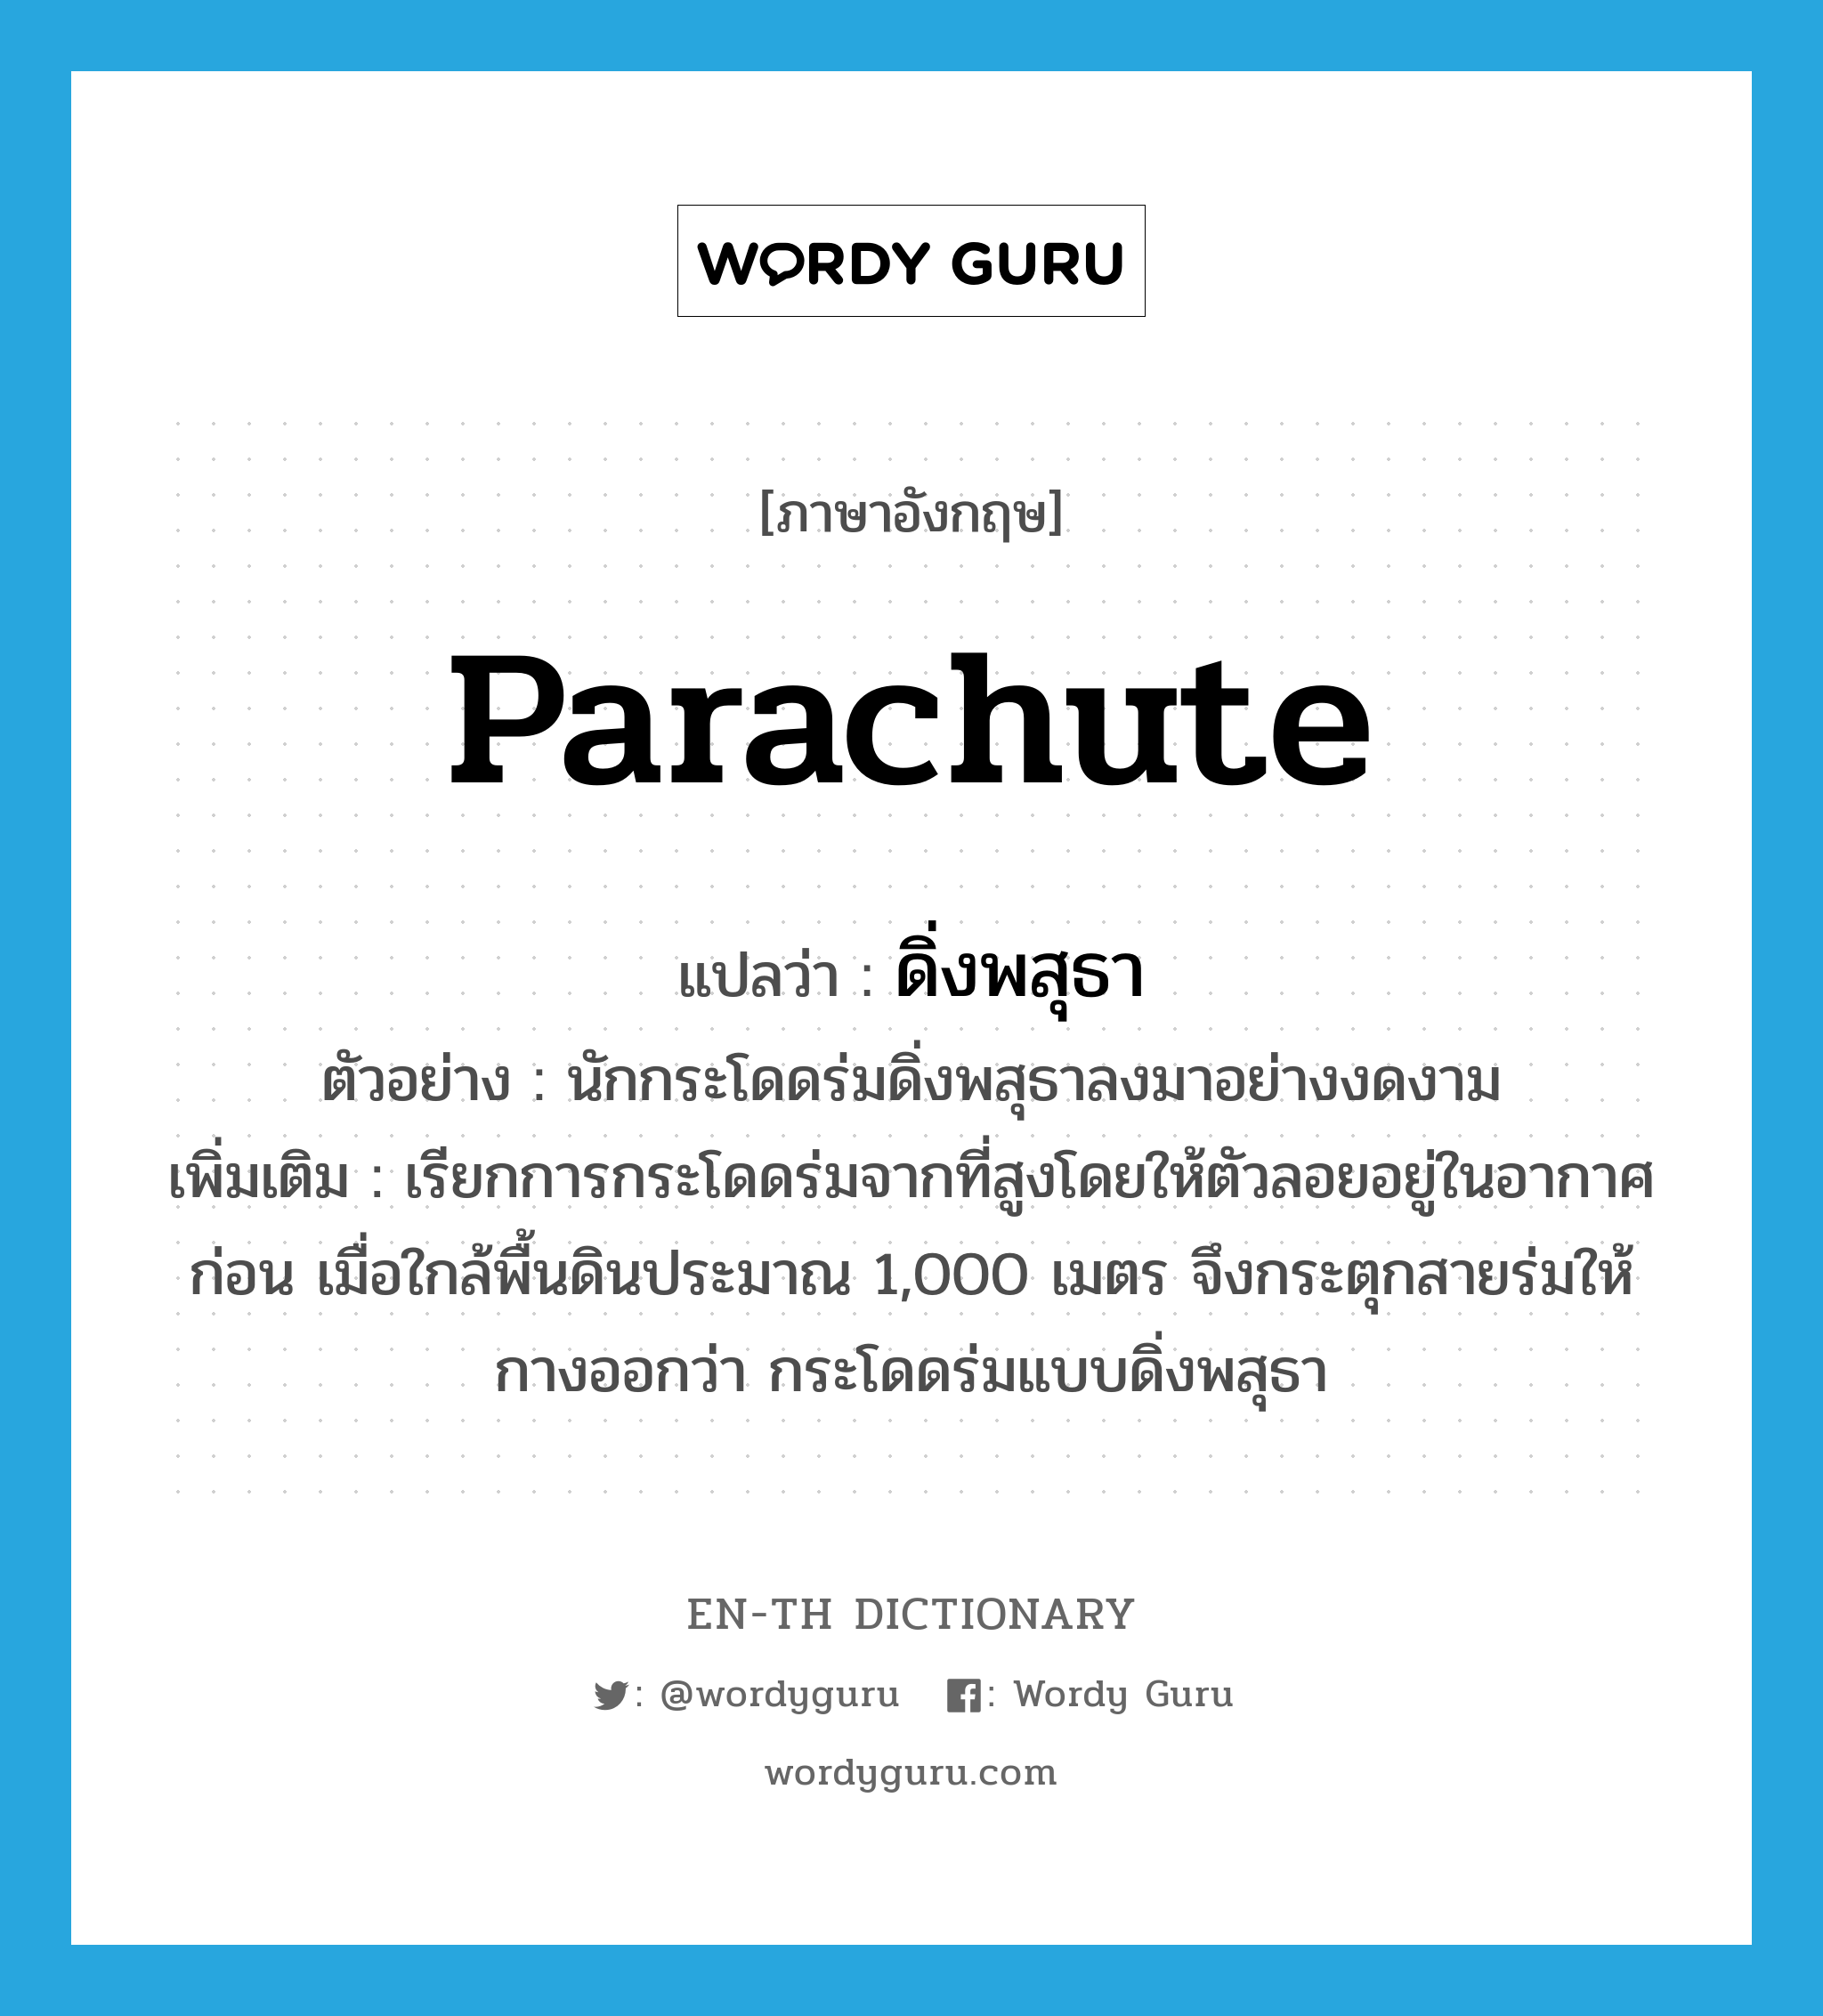 parachute แปลว่า?, คำศัพท์ภาษาอังกฤษ parachute แปลว่า ดิ่งพสุธา ประเภท N ตัวอย่าง นักกระโดดร่มดิ่งพสุธาลงมาอย่างงดงาม เพิ่มเติม เรียกการกระโดดร่มจากที่สูงโดยให้ตัวลอยอยู่ในอากาศก่อน เมื่อใกล้พื้นดินประมาณ 1,000 เมตร จึงกระตุกสายร่มให้กางออกว่า กระโดดร่มแบบดิ่งพสุธา หมวด N